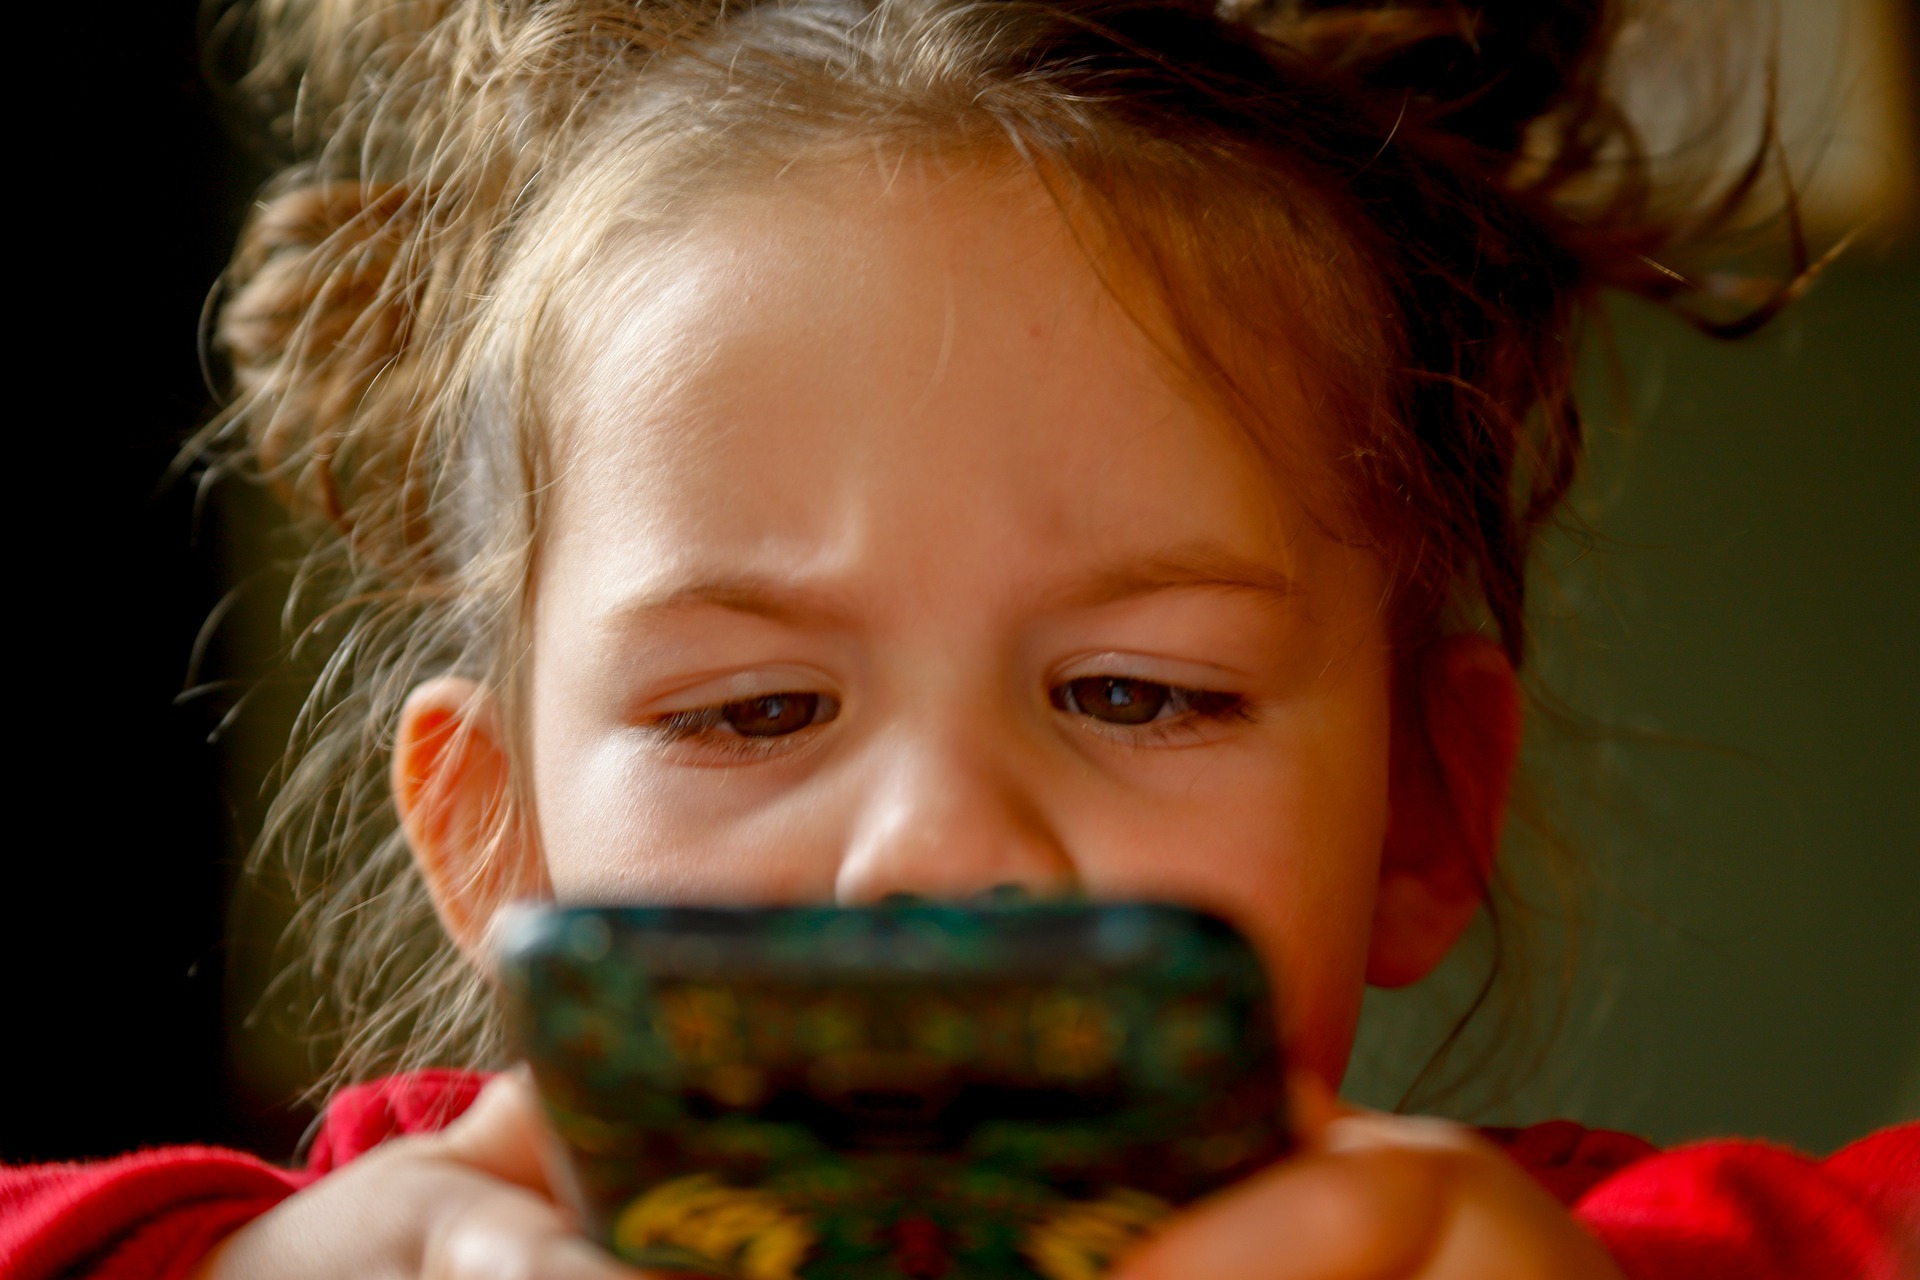 Ekran kullanımının çocuklara etkisi